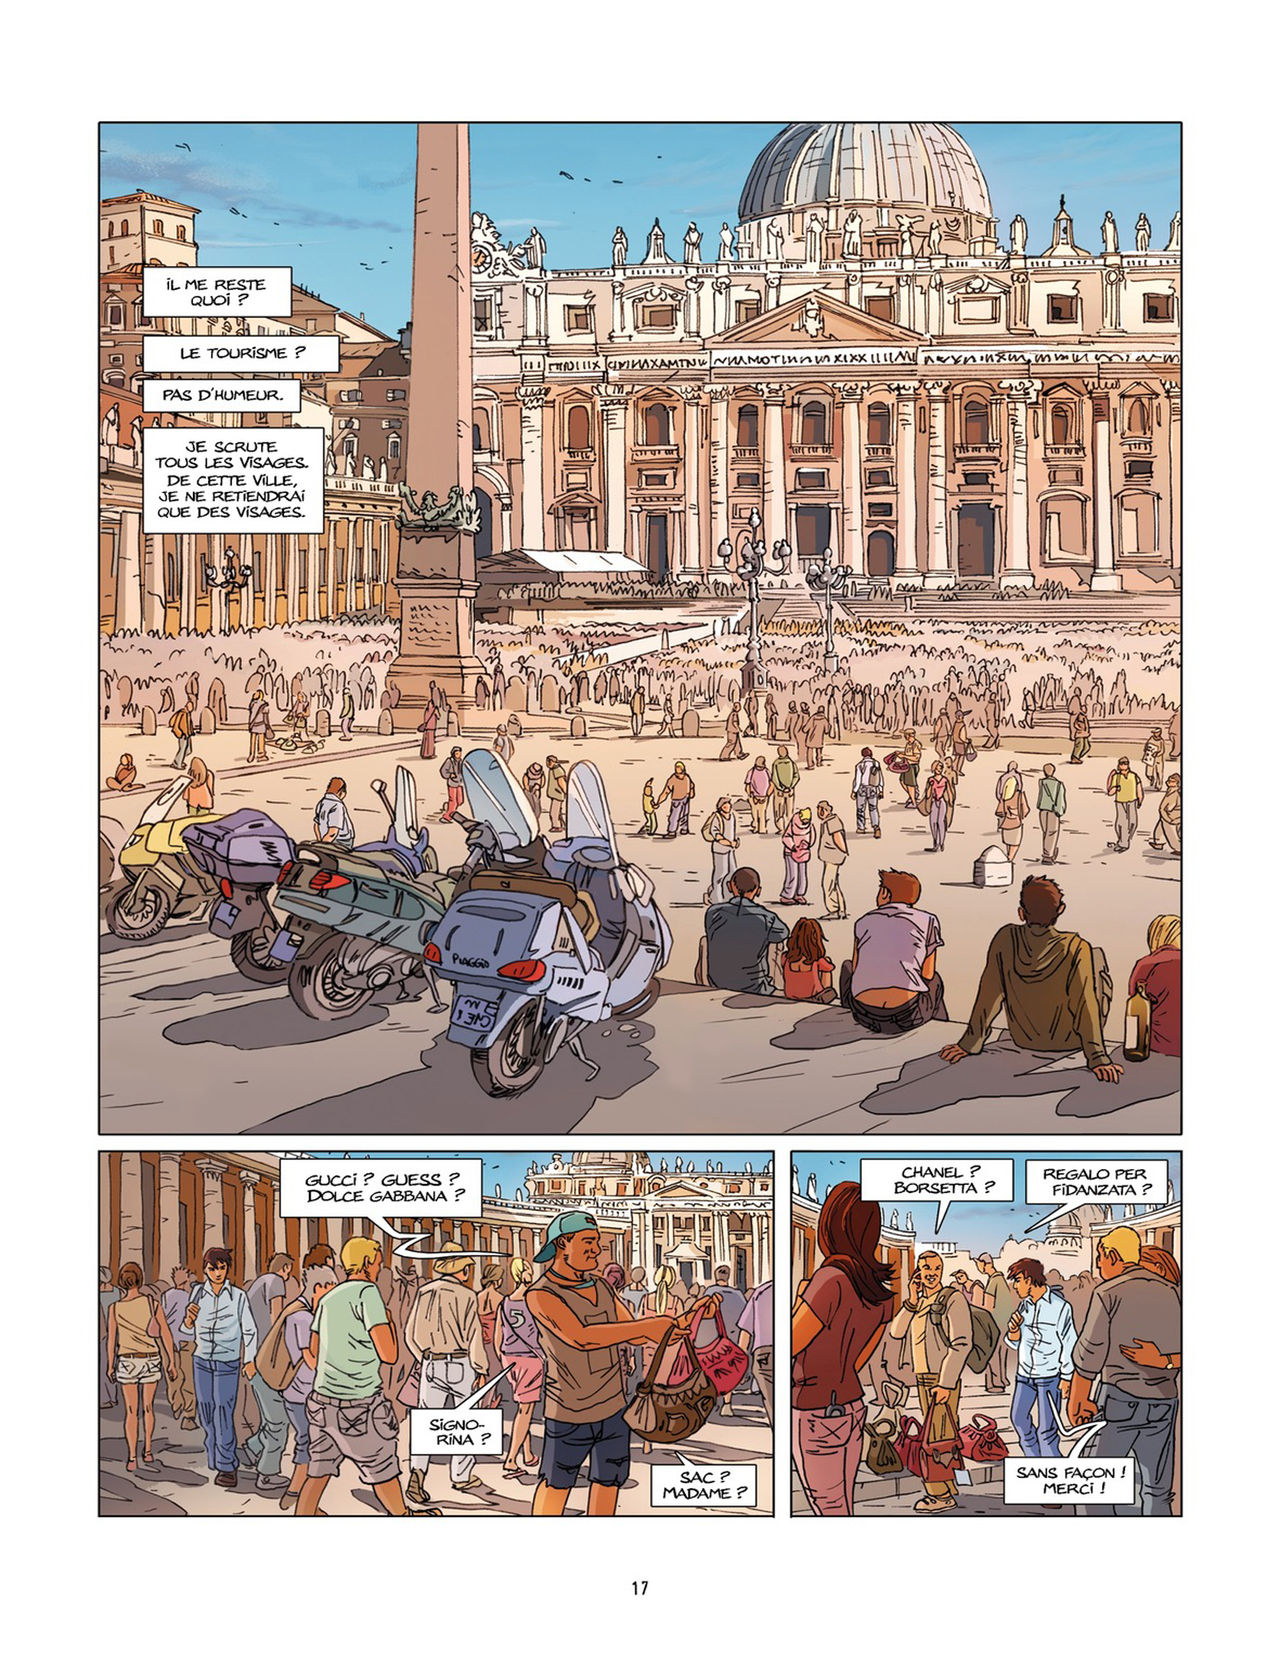 Une nuit à Rome - Tome 2 numero d'image 16